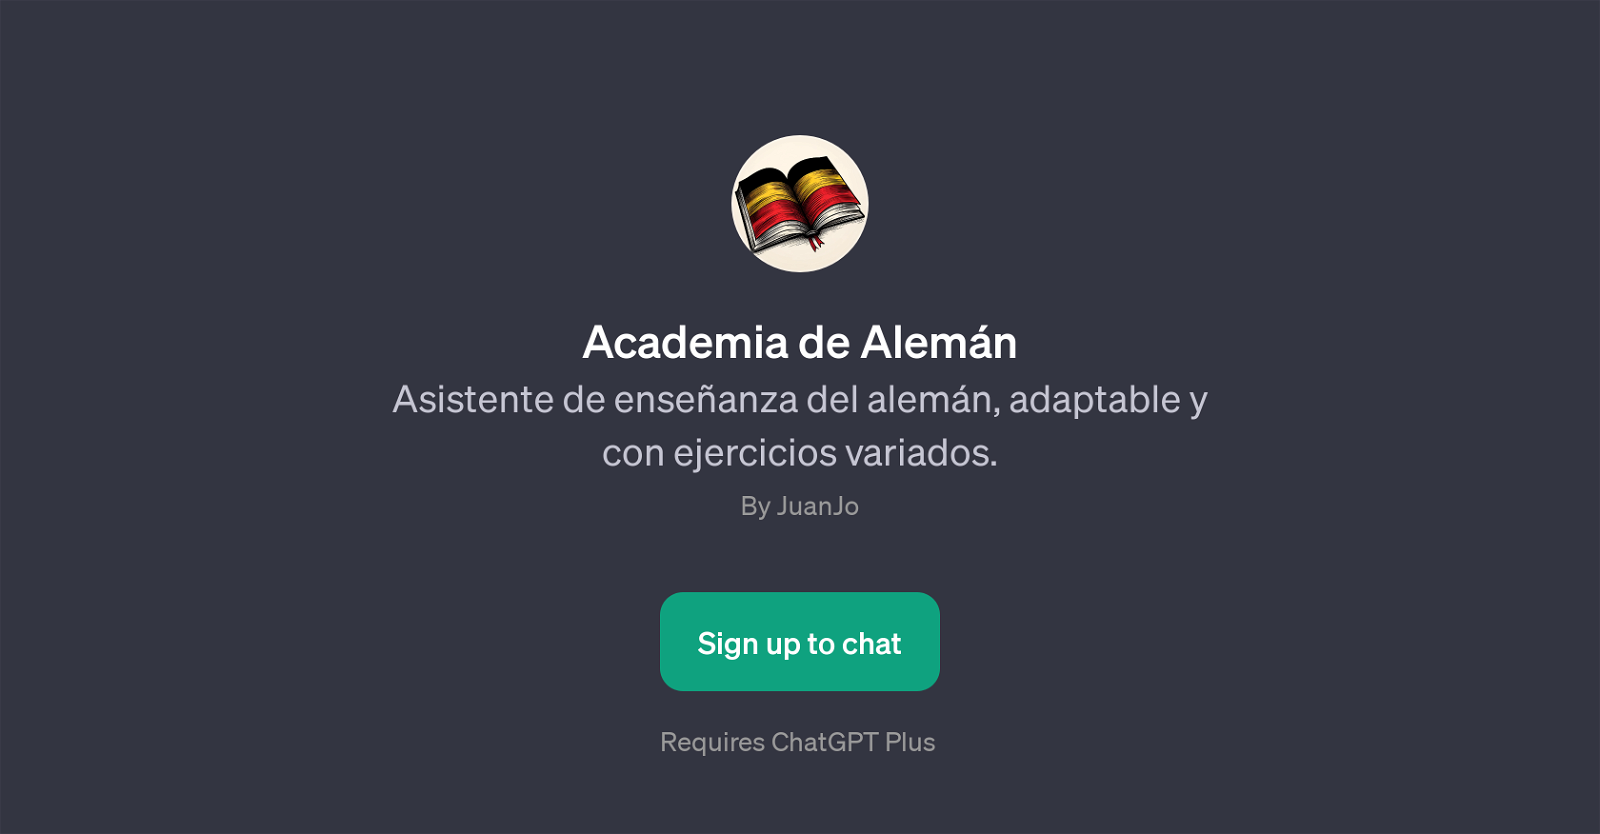 Academia de Alemn website